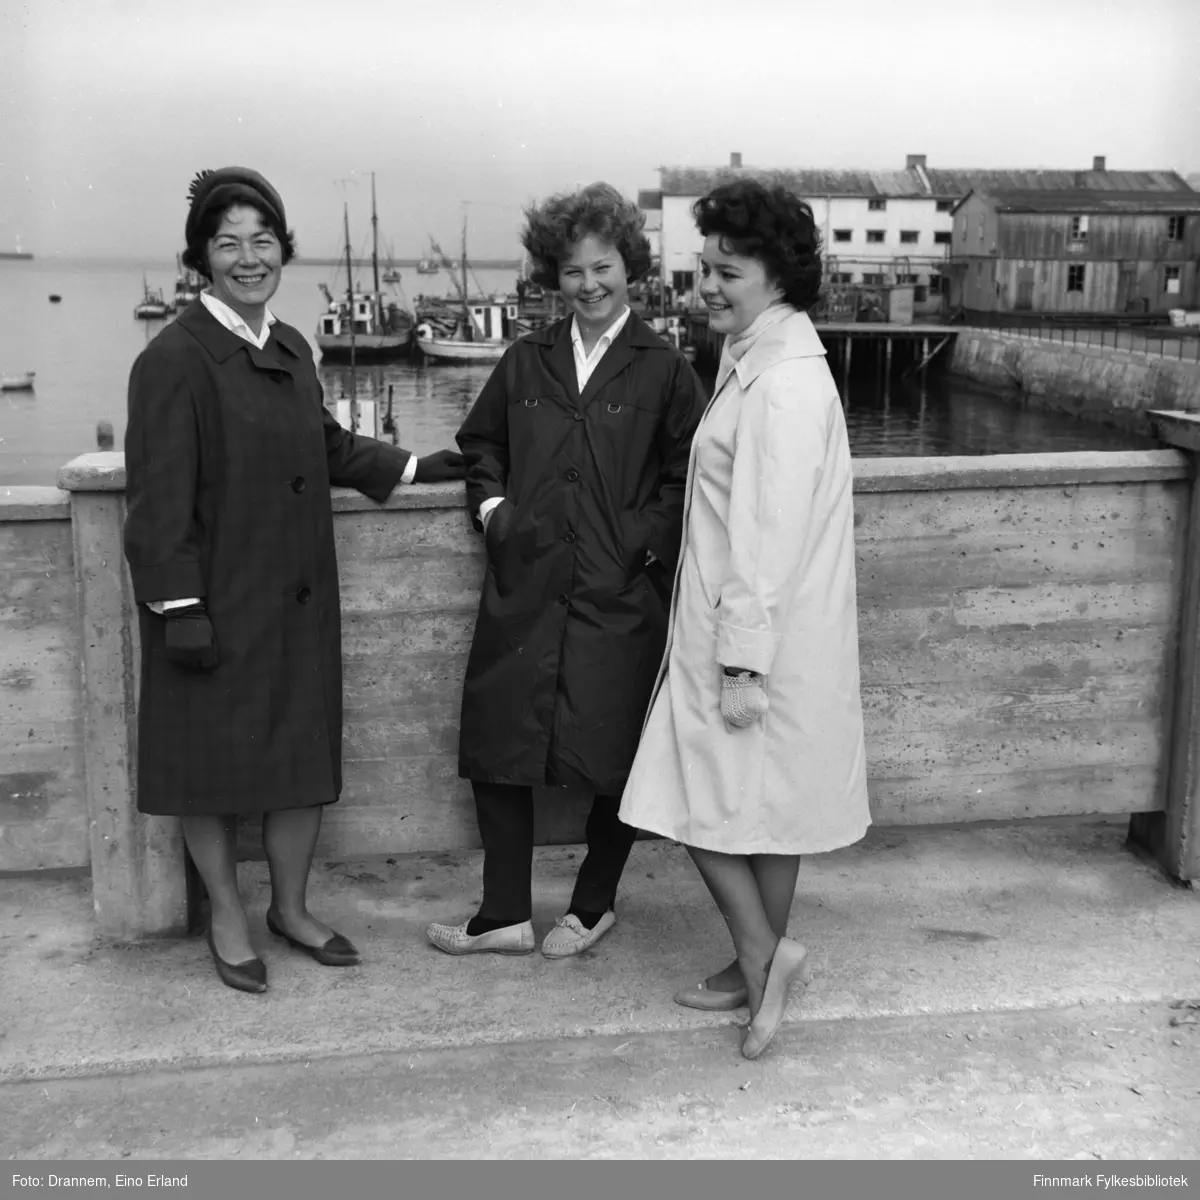 Jenny Drannem, Turid Karikoski og Maija Hoikka (født Gerasimoff) - fotografert i et havneområde. Sted er muligens i Hammerfest.